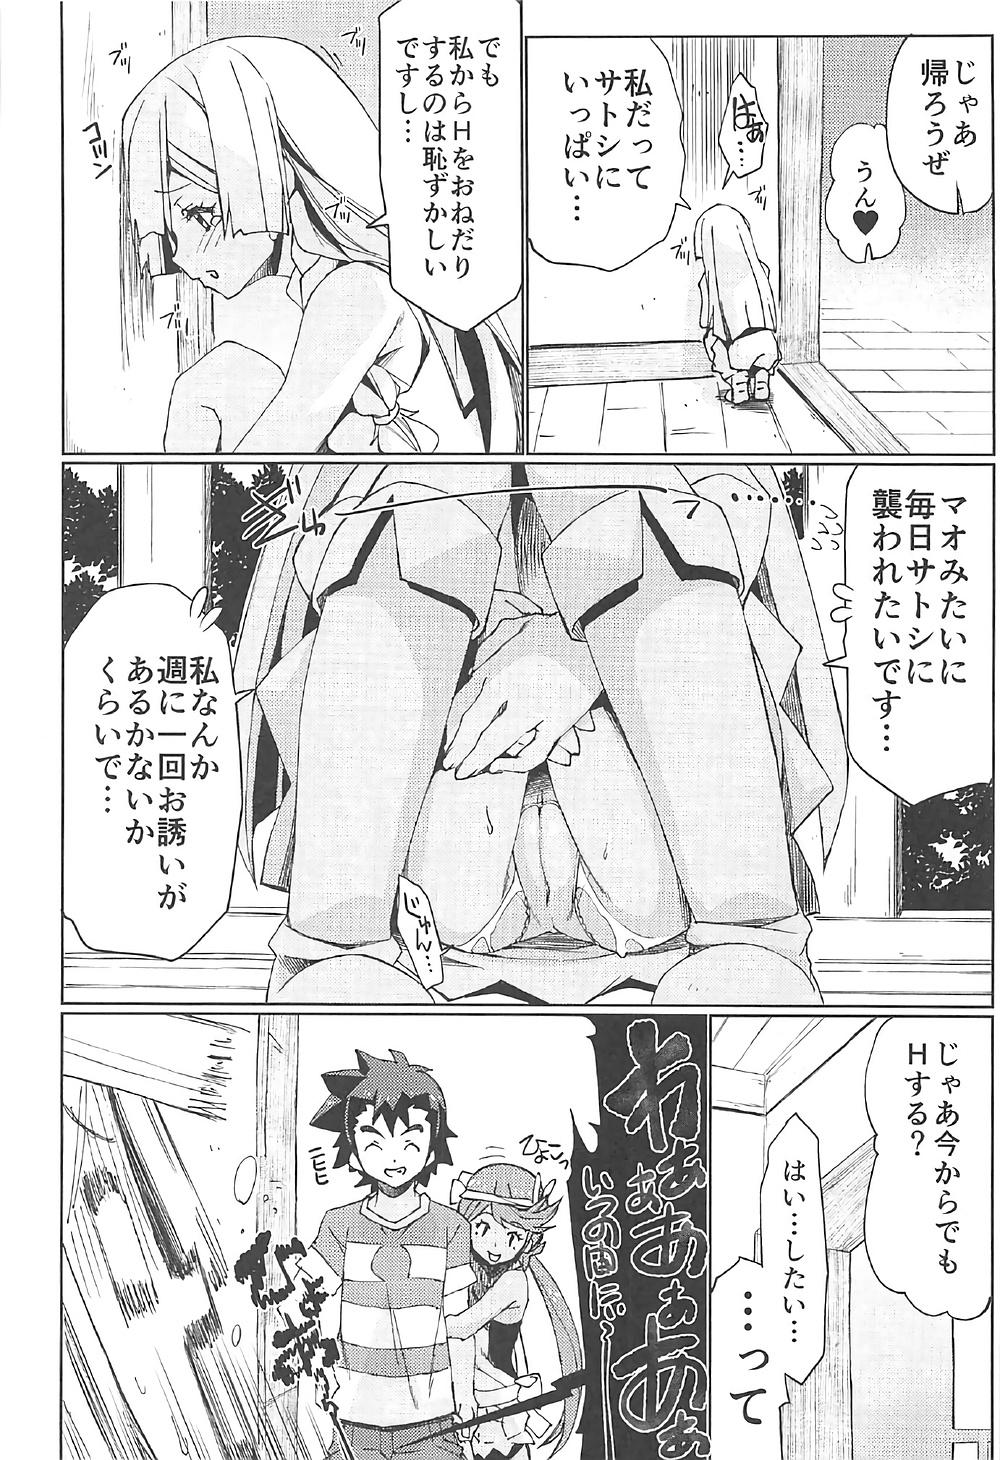 Bed Watashi ga sono Ki ni nareba Ronriteki ni! 2!! - Pokemon Amature Sex Tapes - Page 9